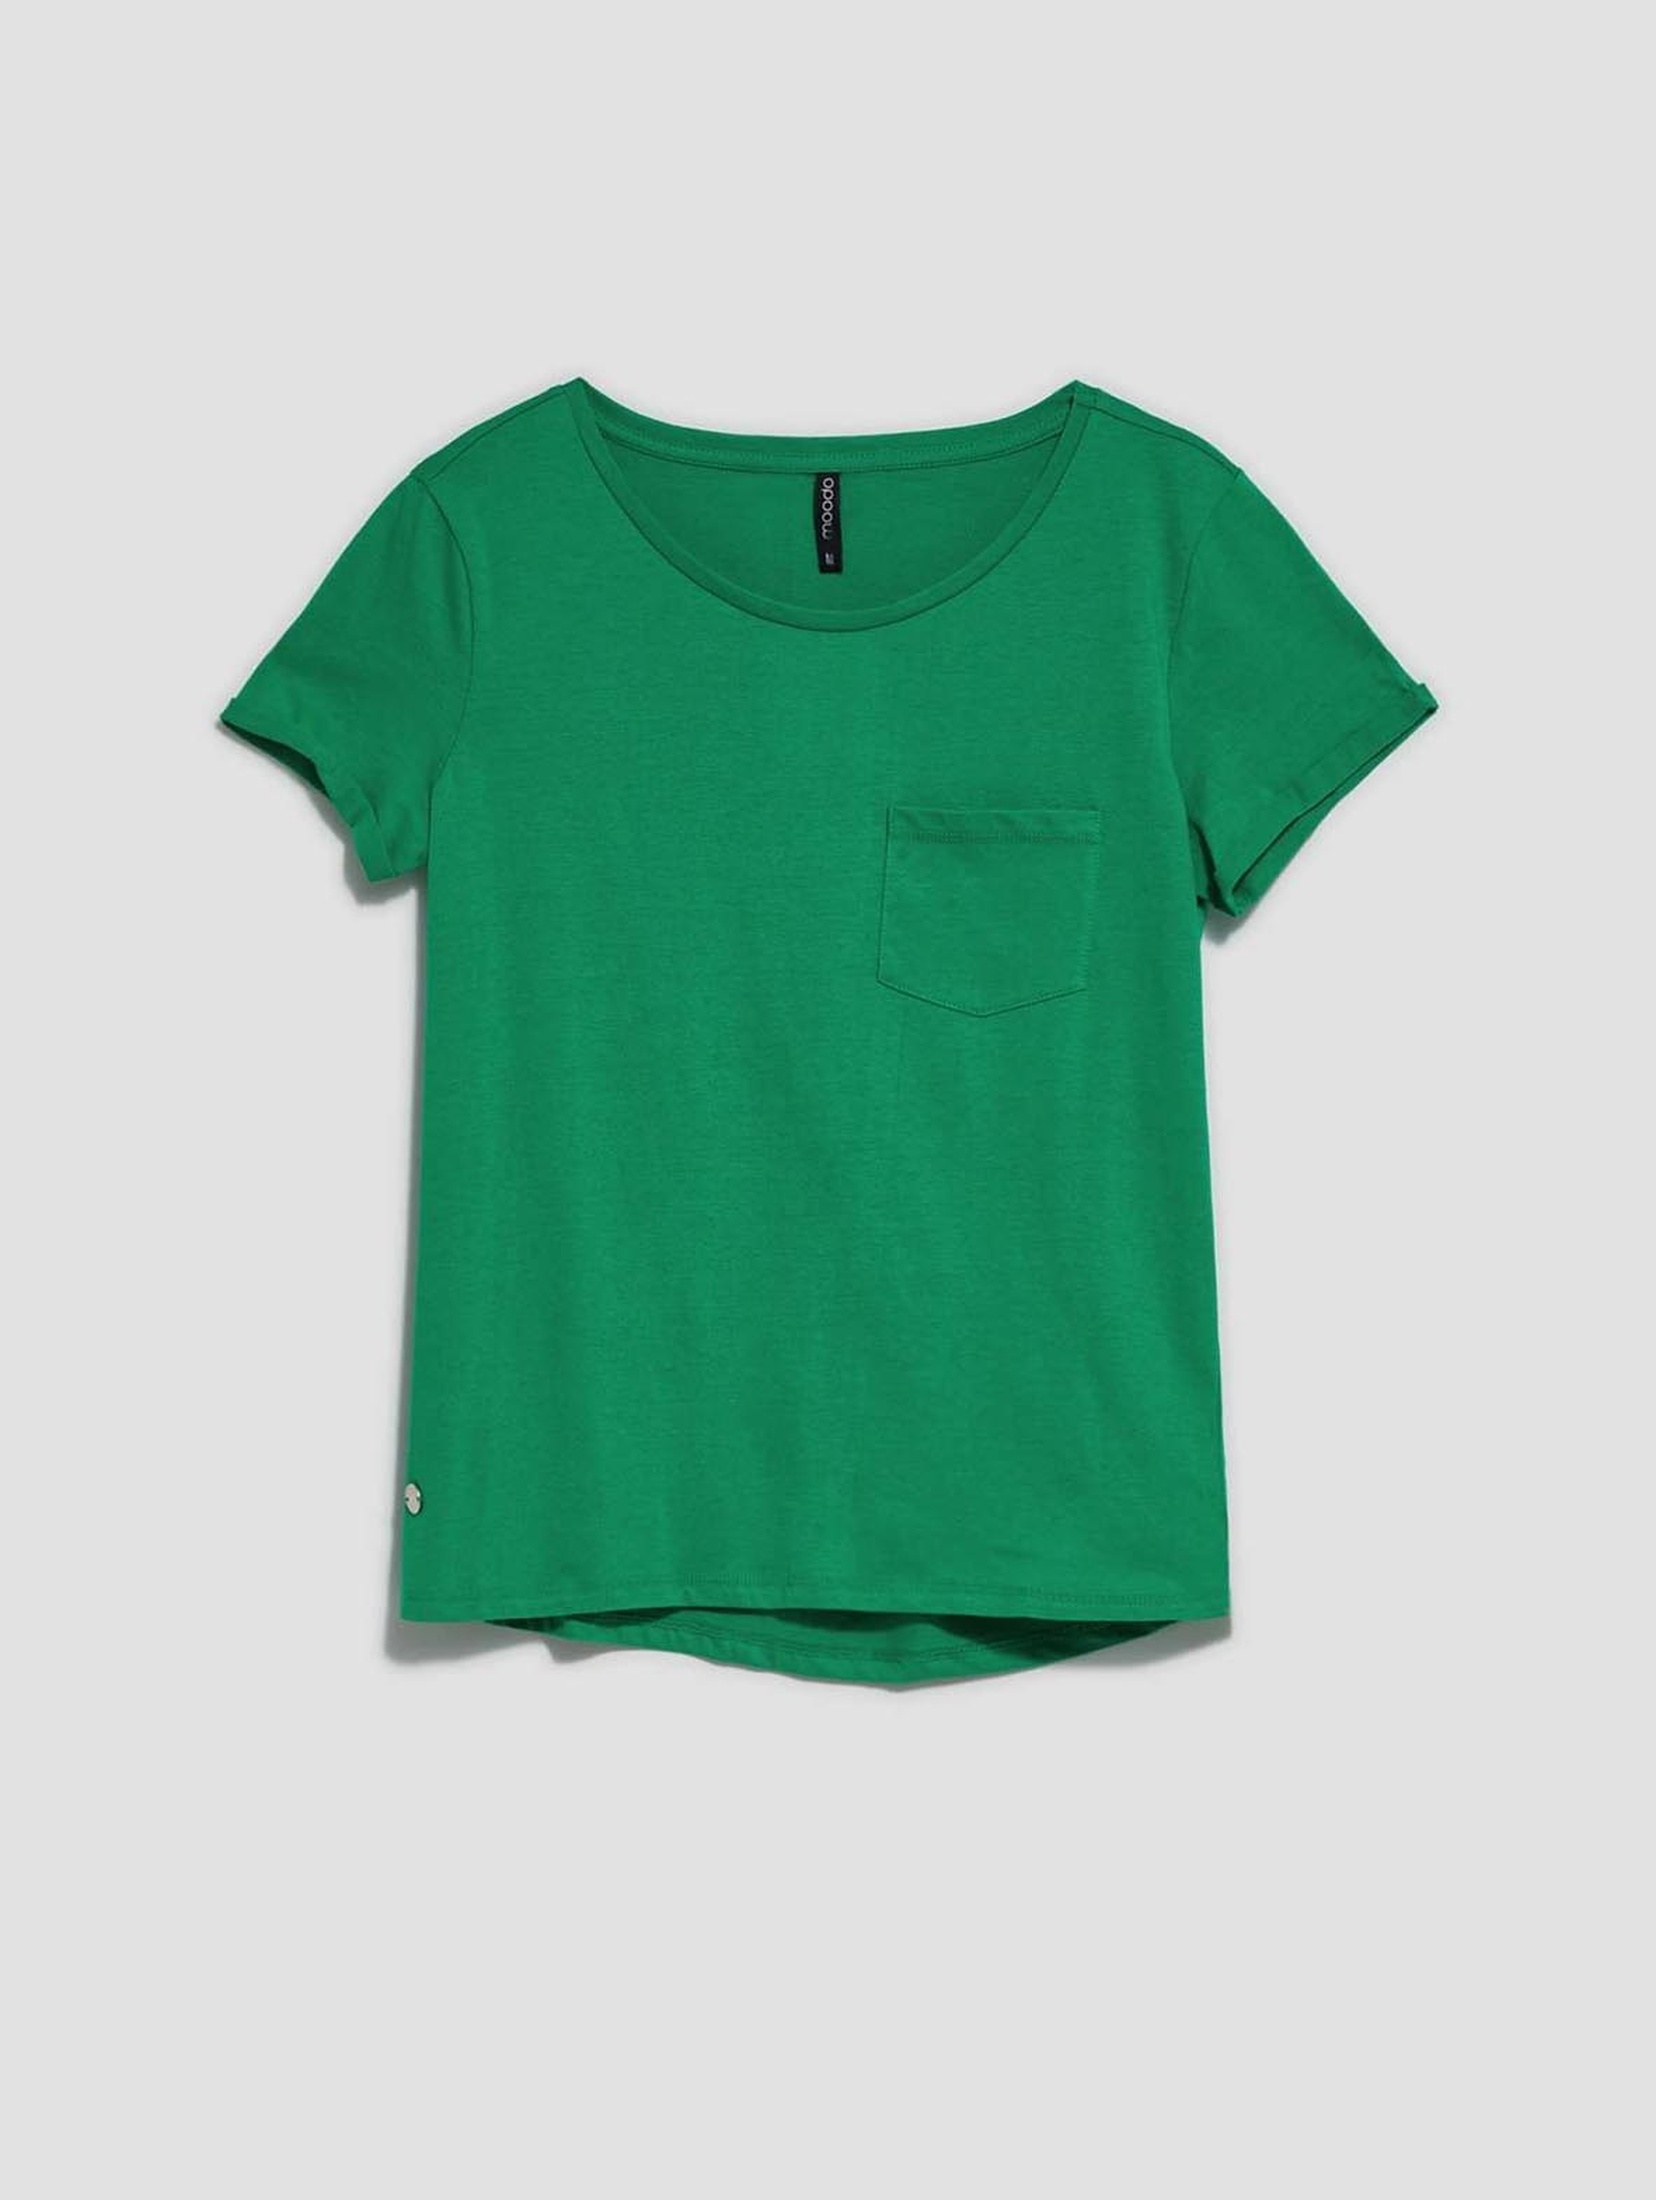 Bawełniany zielona t-shirt damski z kieszonką